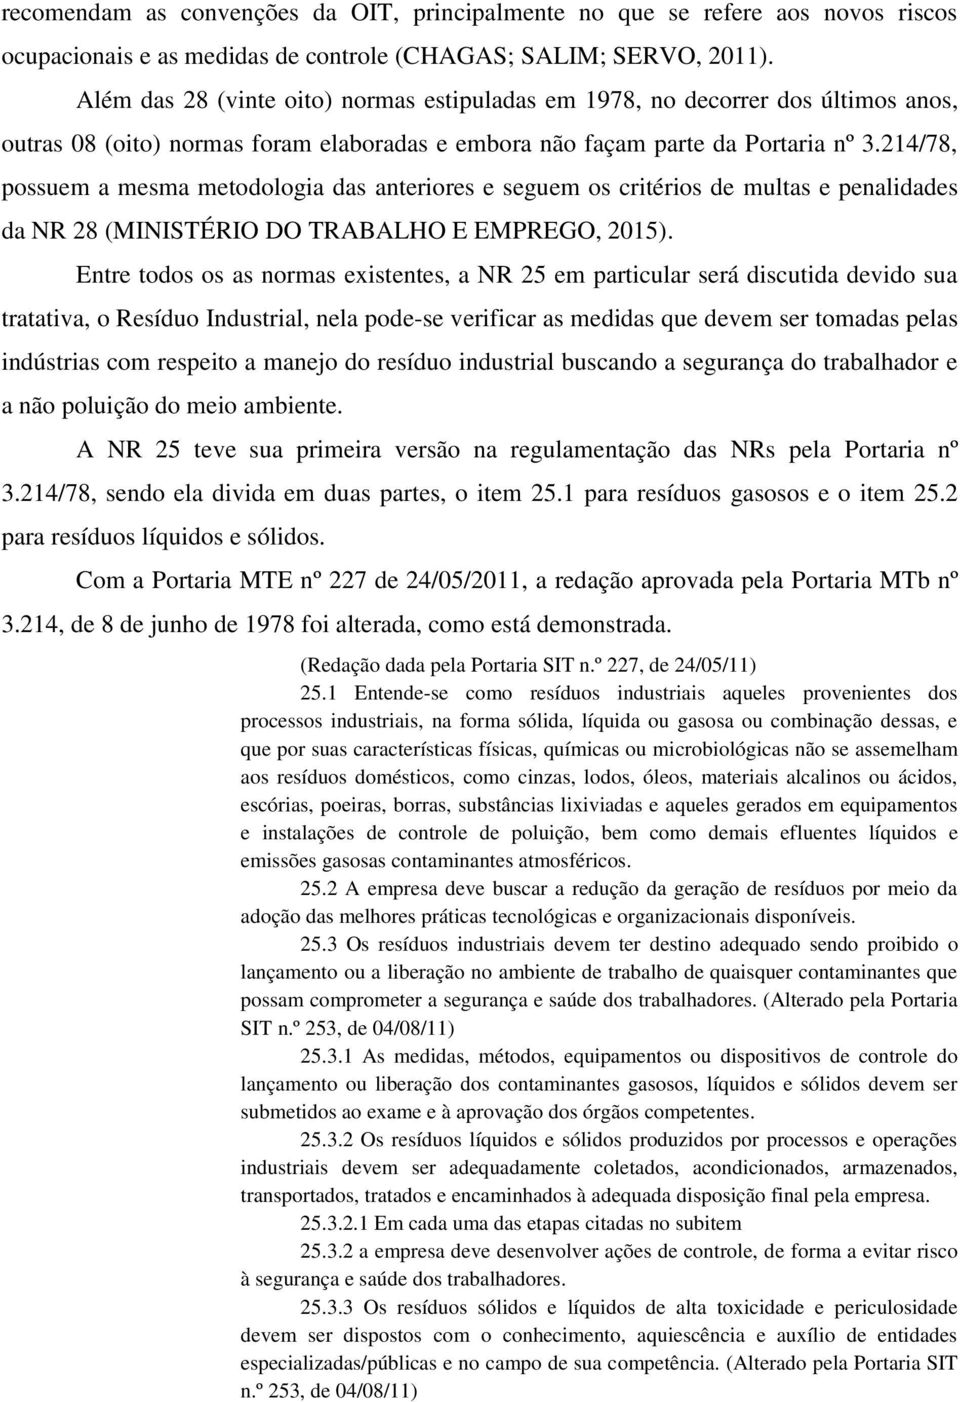 214/78, possuem a mesma metodologia das anteriores e seguem os critérios de multas e penalidades da NR 28 (MINISTÉRIO DO TRABALHO E EMPREGO, 2015).